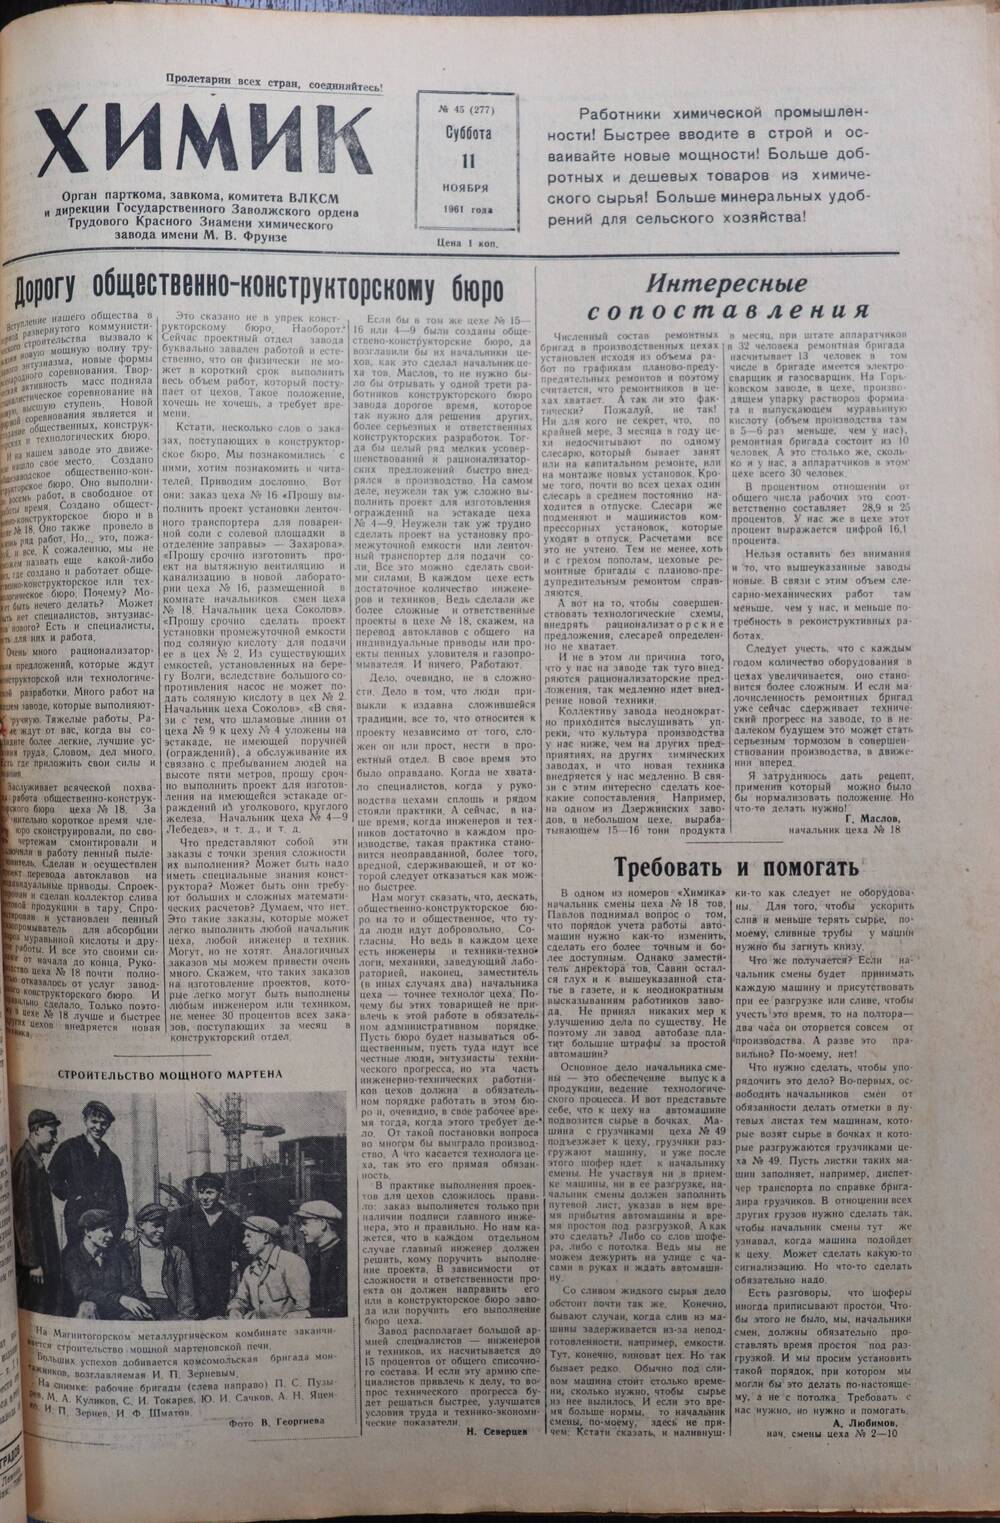 Газета «Химик» № 45 от 11 ноября 1961 года.